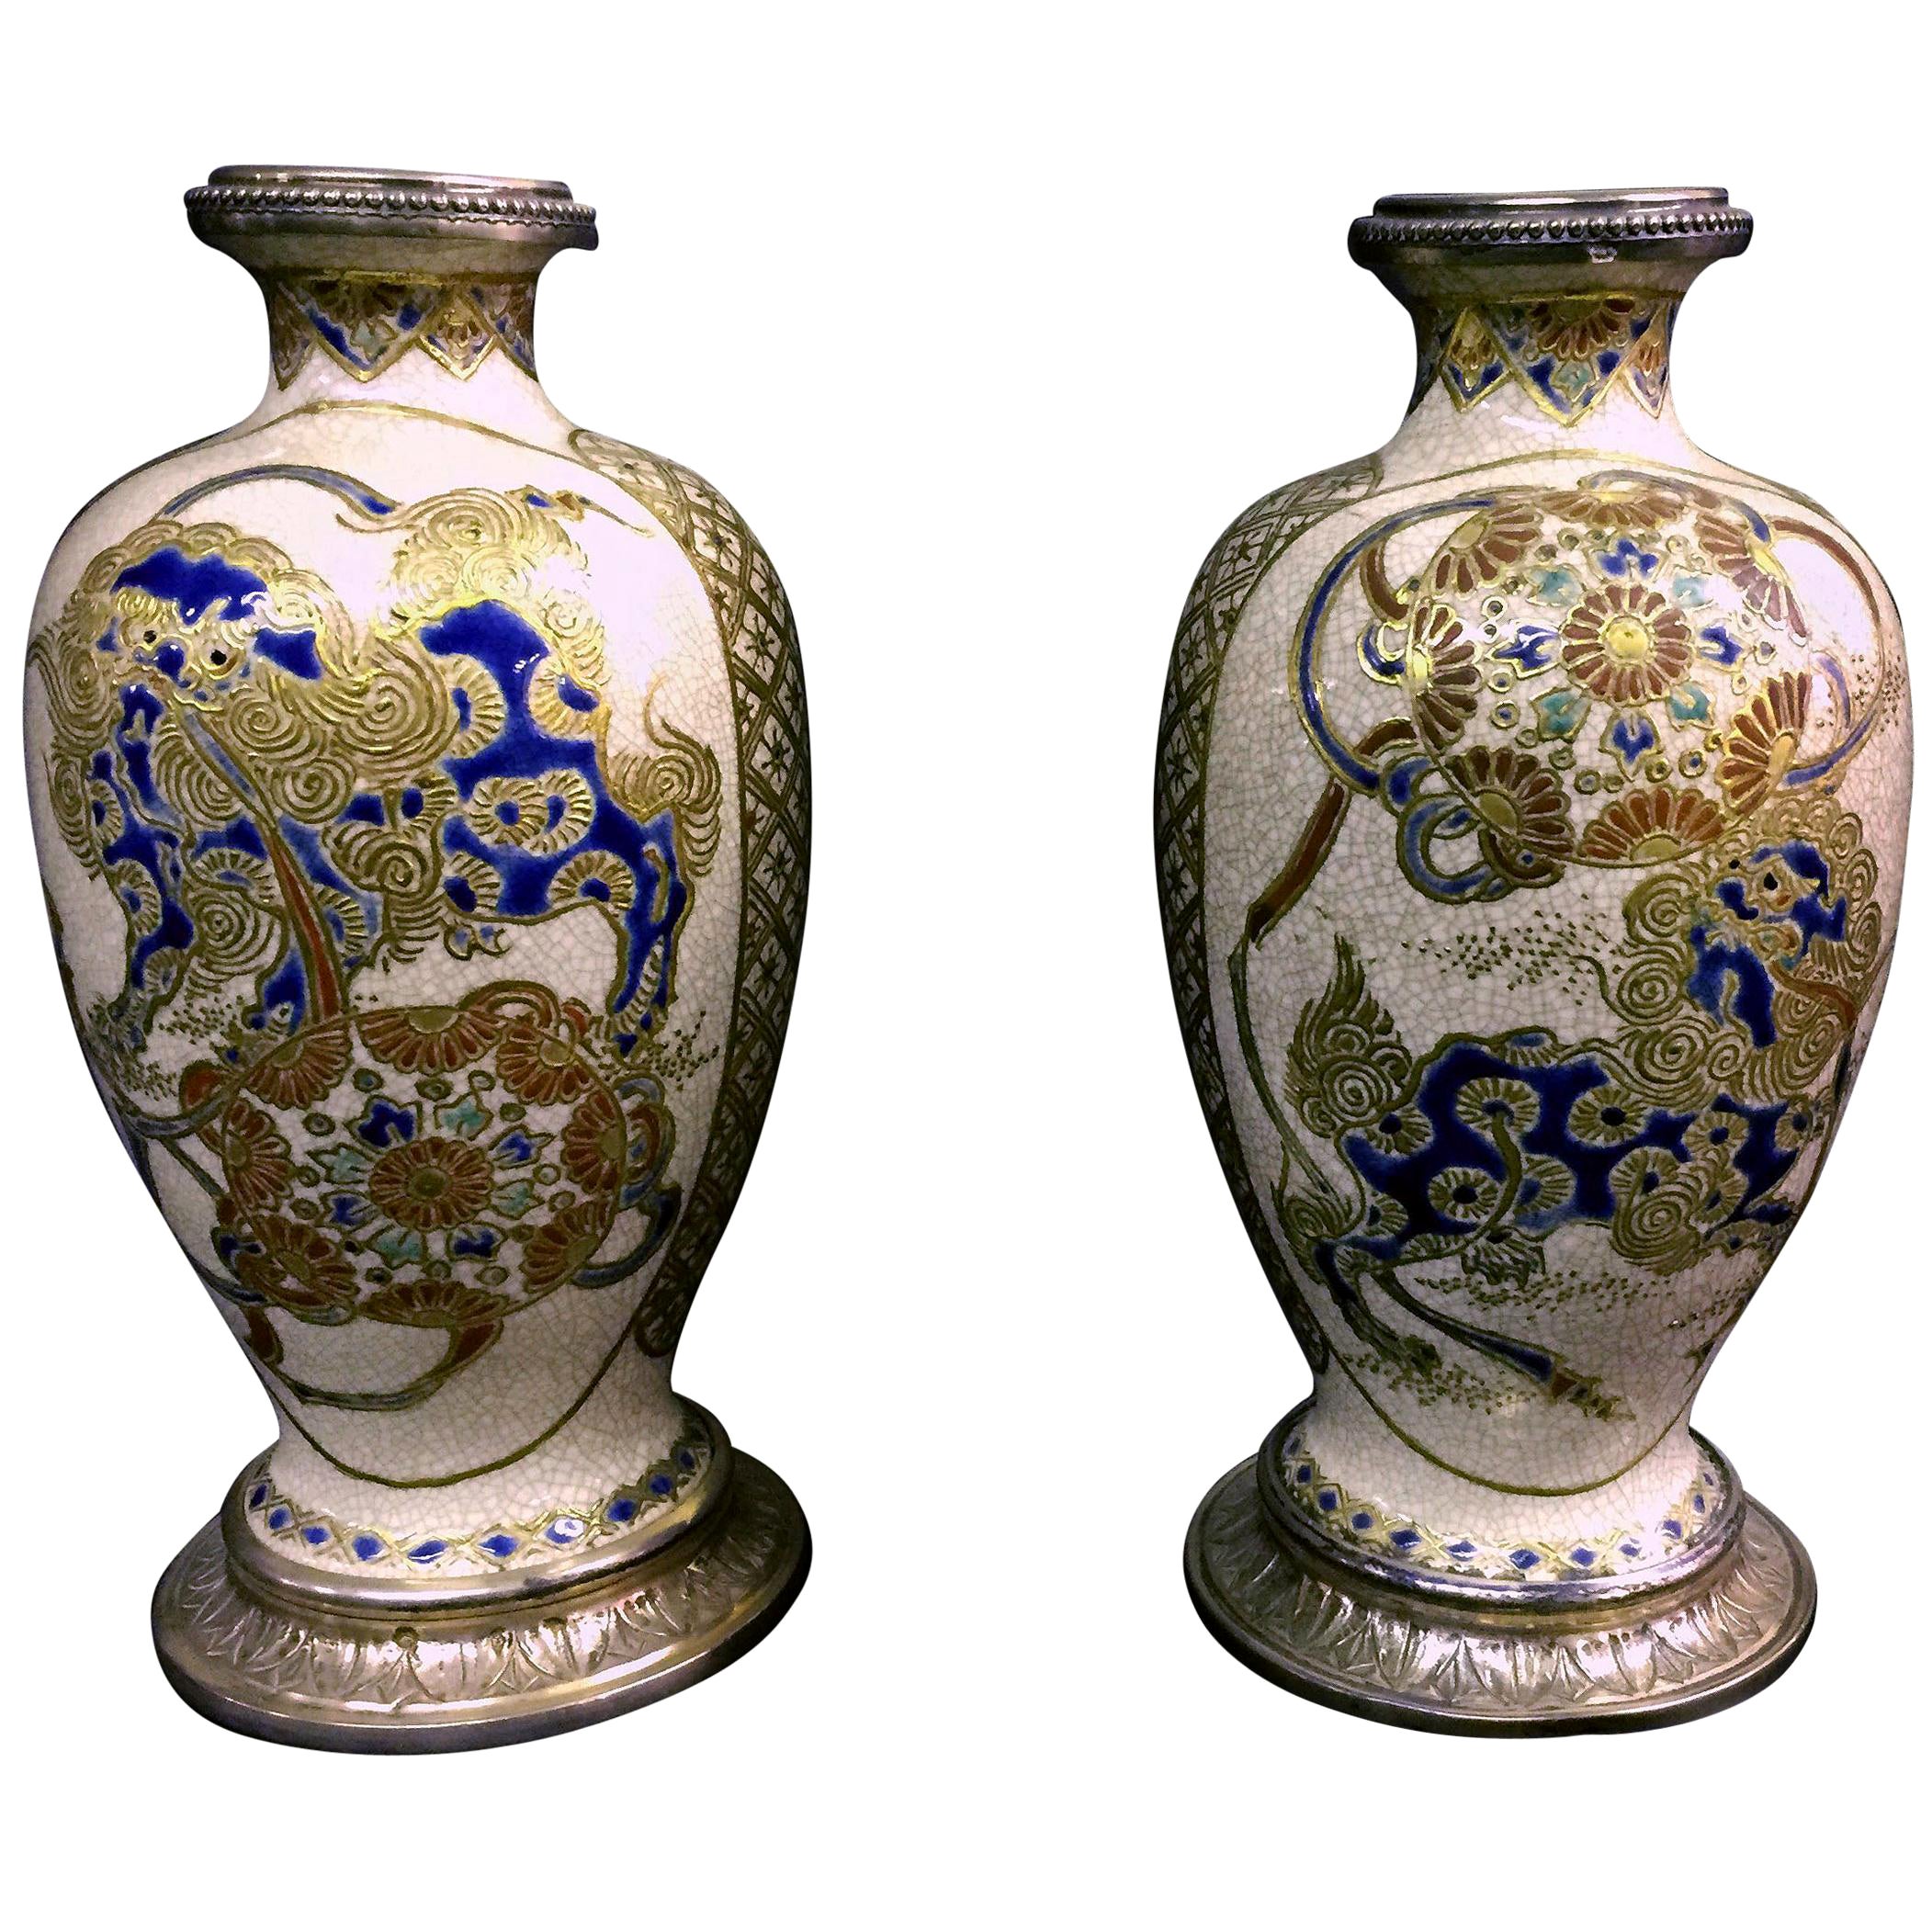 Belle paire de vases en porcelaine de Satsuma japonaise, montés sur argent, fin du XIXe siècle